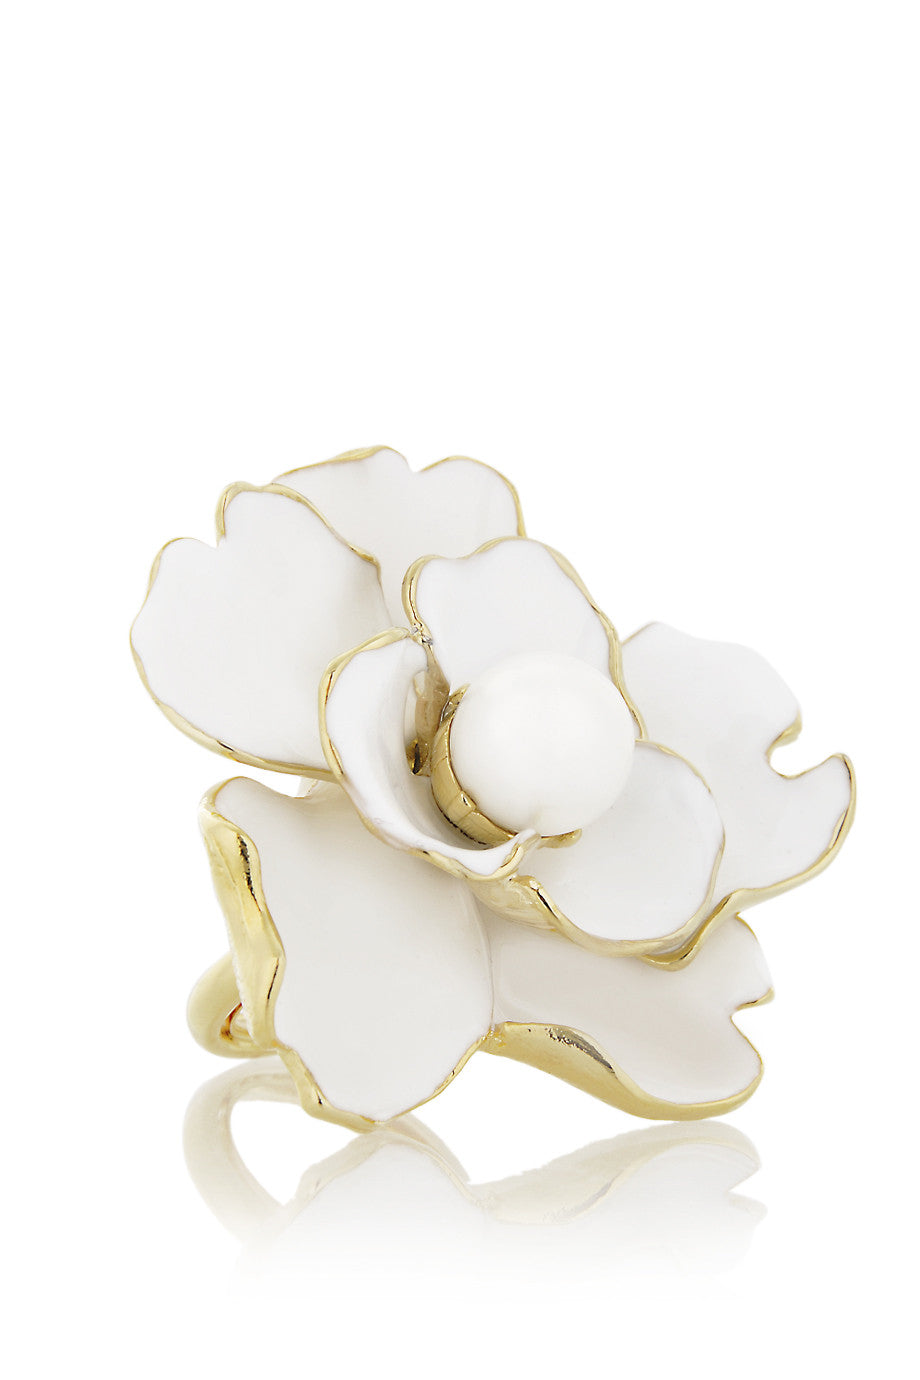 Λευκό Δακτυλίδι Λουλούδι - Kenneth Jay Lane | ΚοσμήματαCamelia Λευκό Δαχτυλίδι με Λουλούδι - Kenneth Jay Lane | Κοσμήματα - Δαχτυλίδια